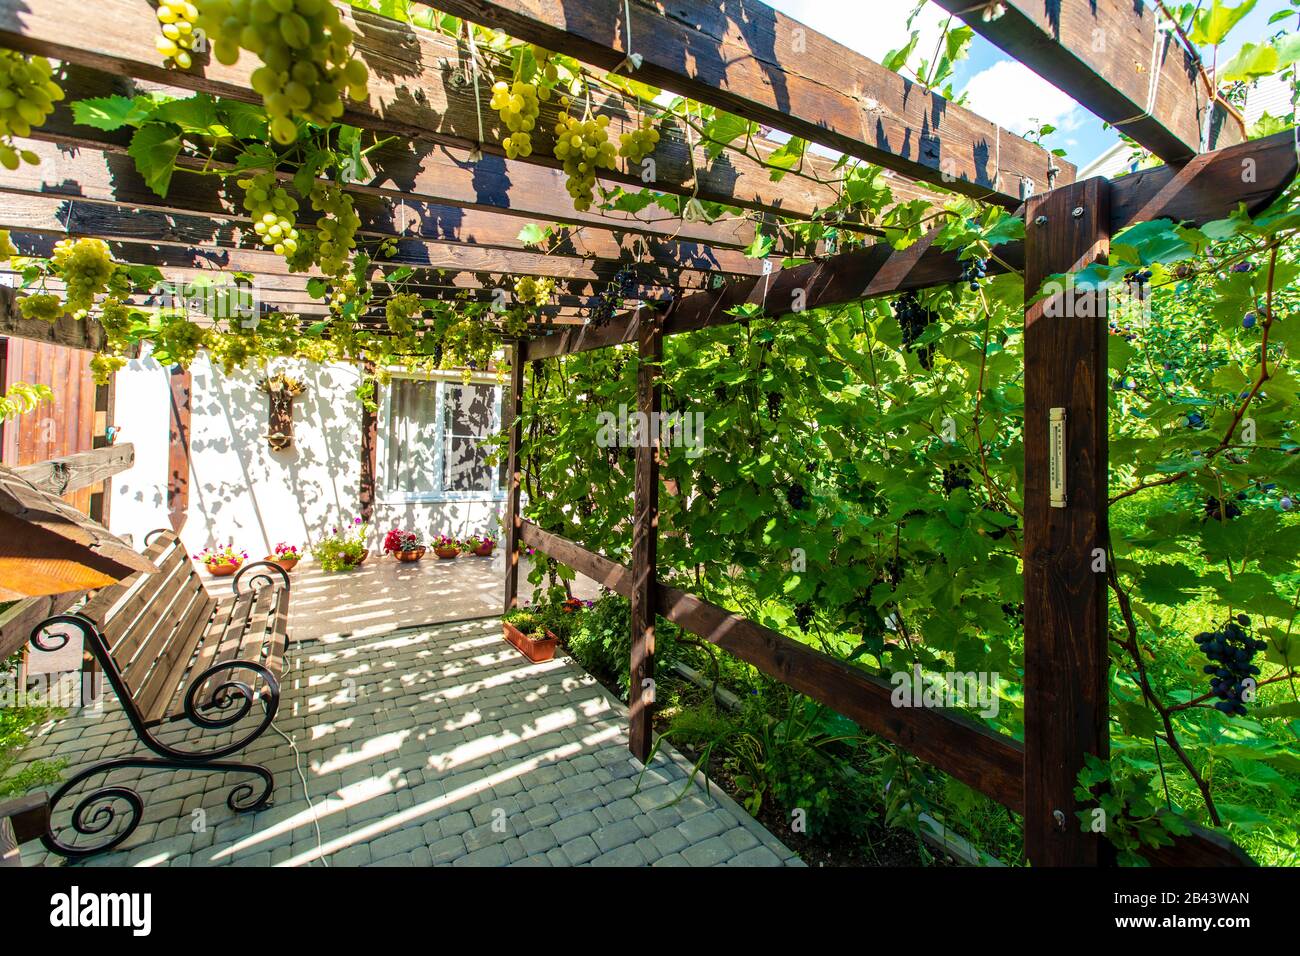 Der Hinterhof des Hauses mit einem Holzdach aus Balken - Pergola. Trauben wachsen an den Stäben und erzeugen einen Schatten. Trauben sind sichtbar Stockfoto